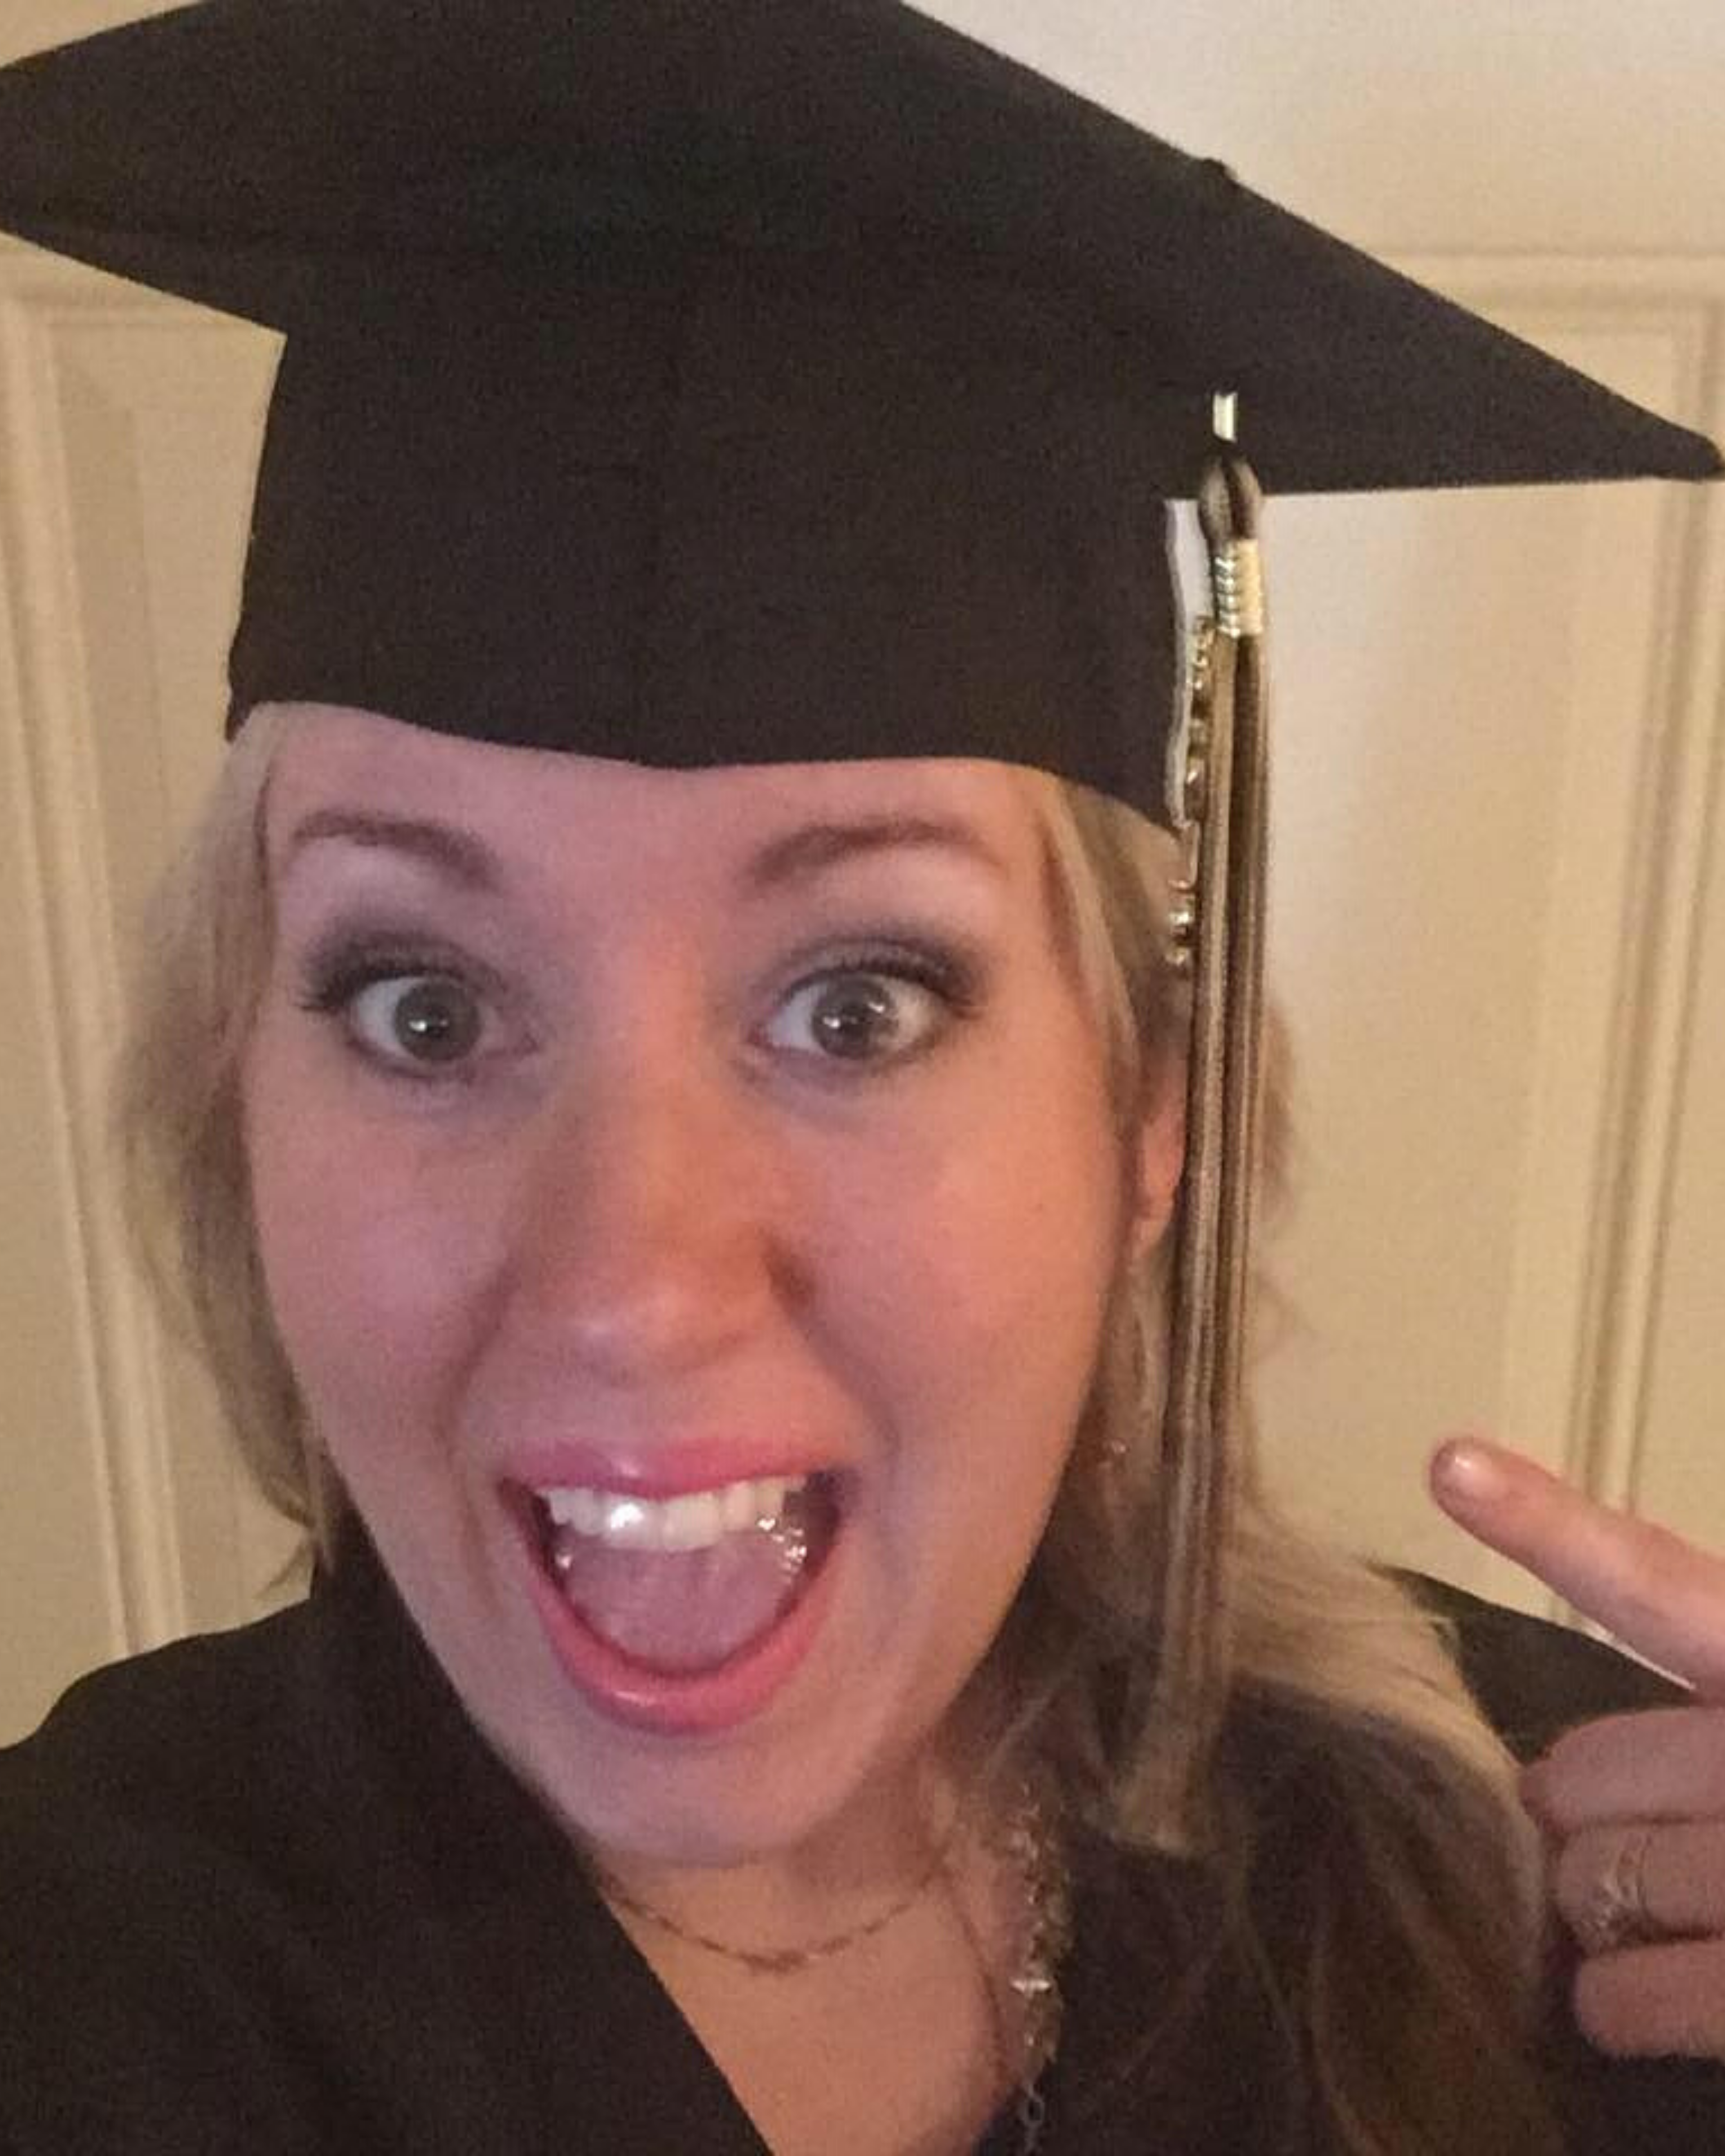 Bethany Jett in a graduation cap